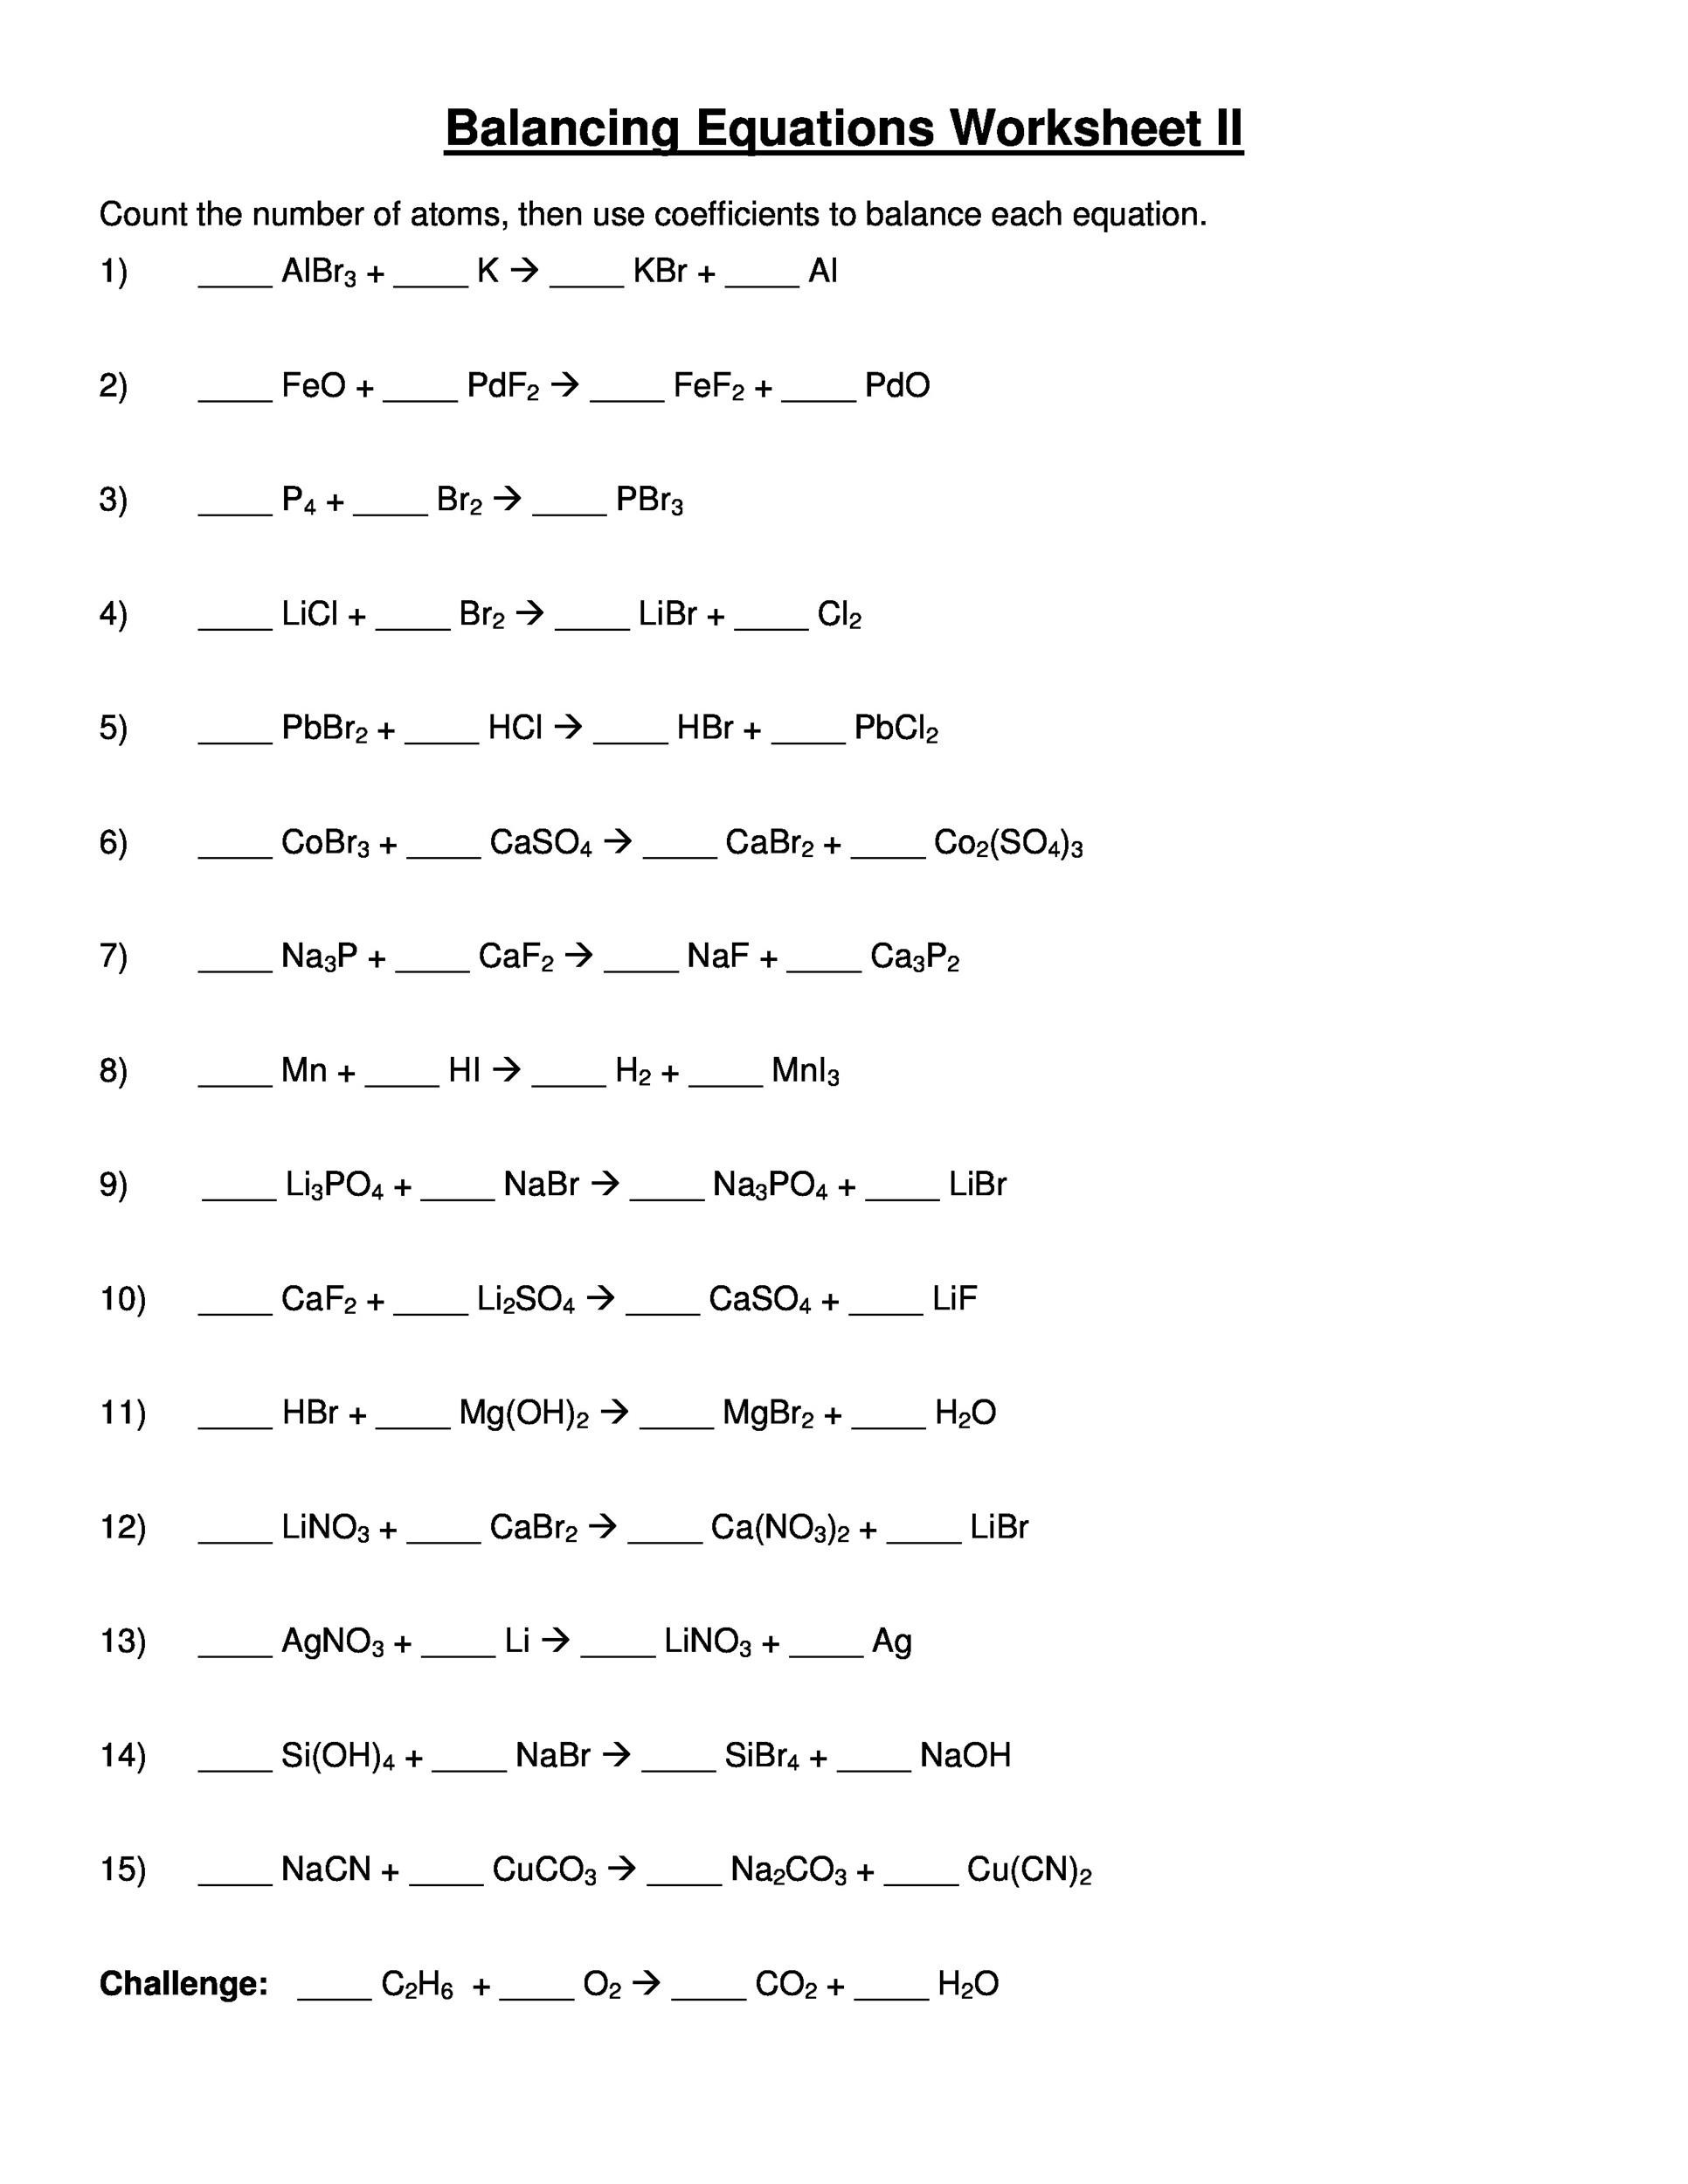 Balancing Equations Worksheet Answers